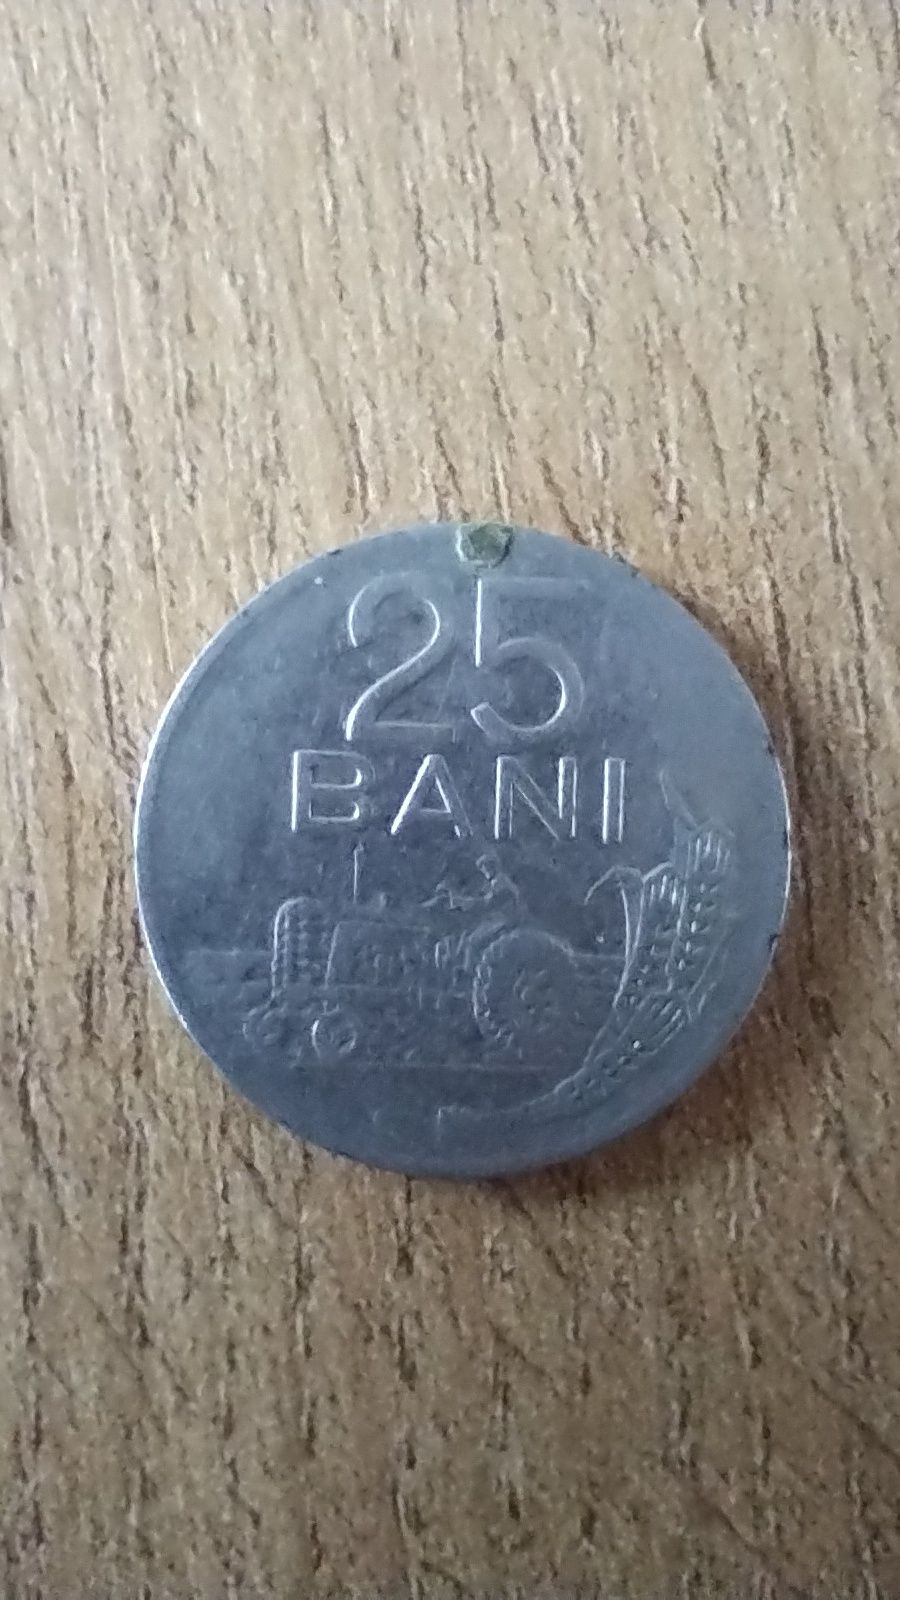 25 bani 1966, republica socialista Romania, moneta kolekcjonerska